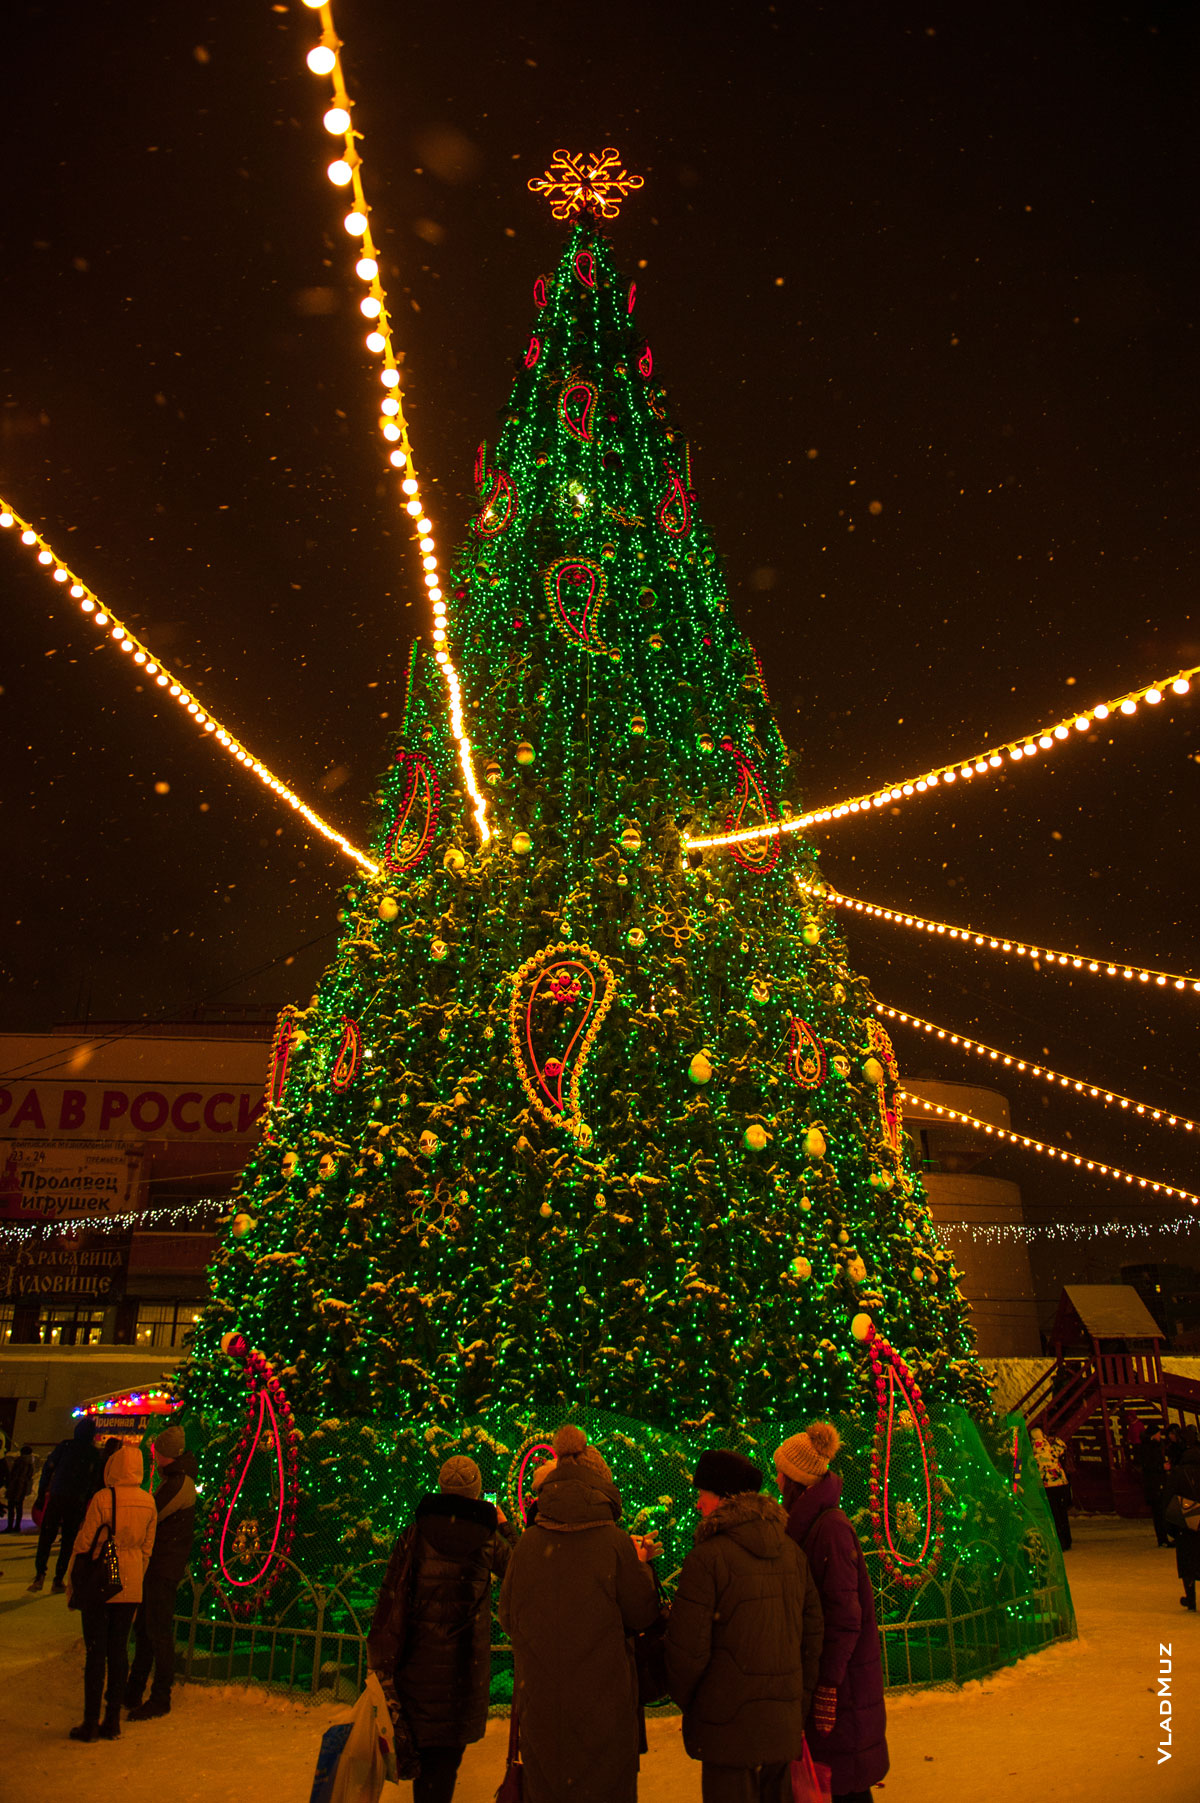 Фото главной новогодней ёлки областного центра Иваново на площади Пушкина у Дворца искусств